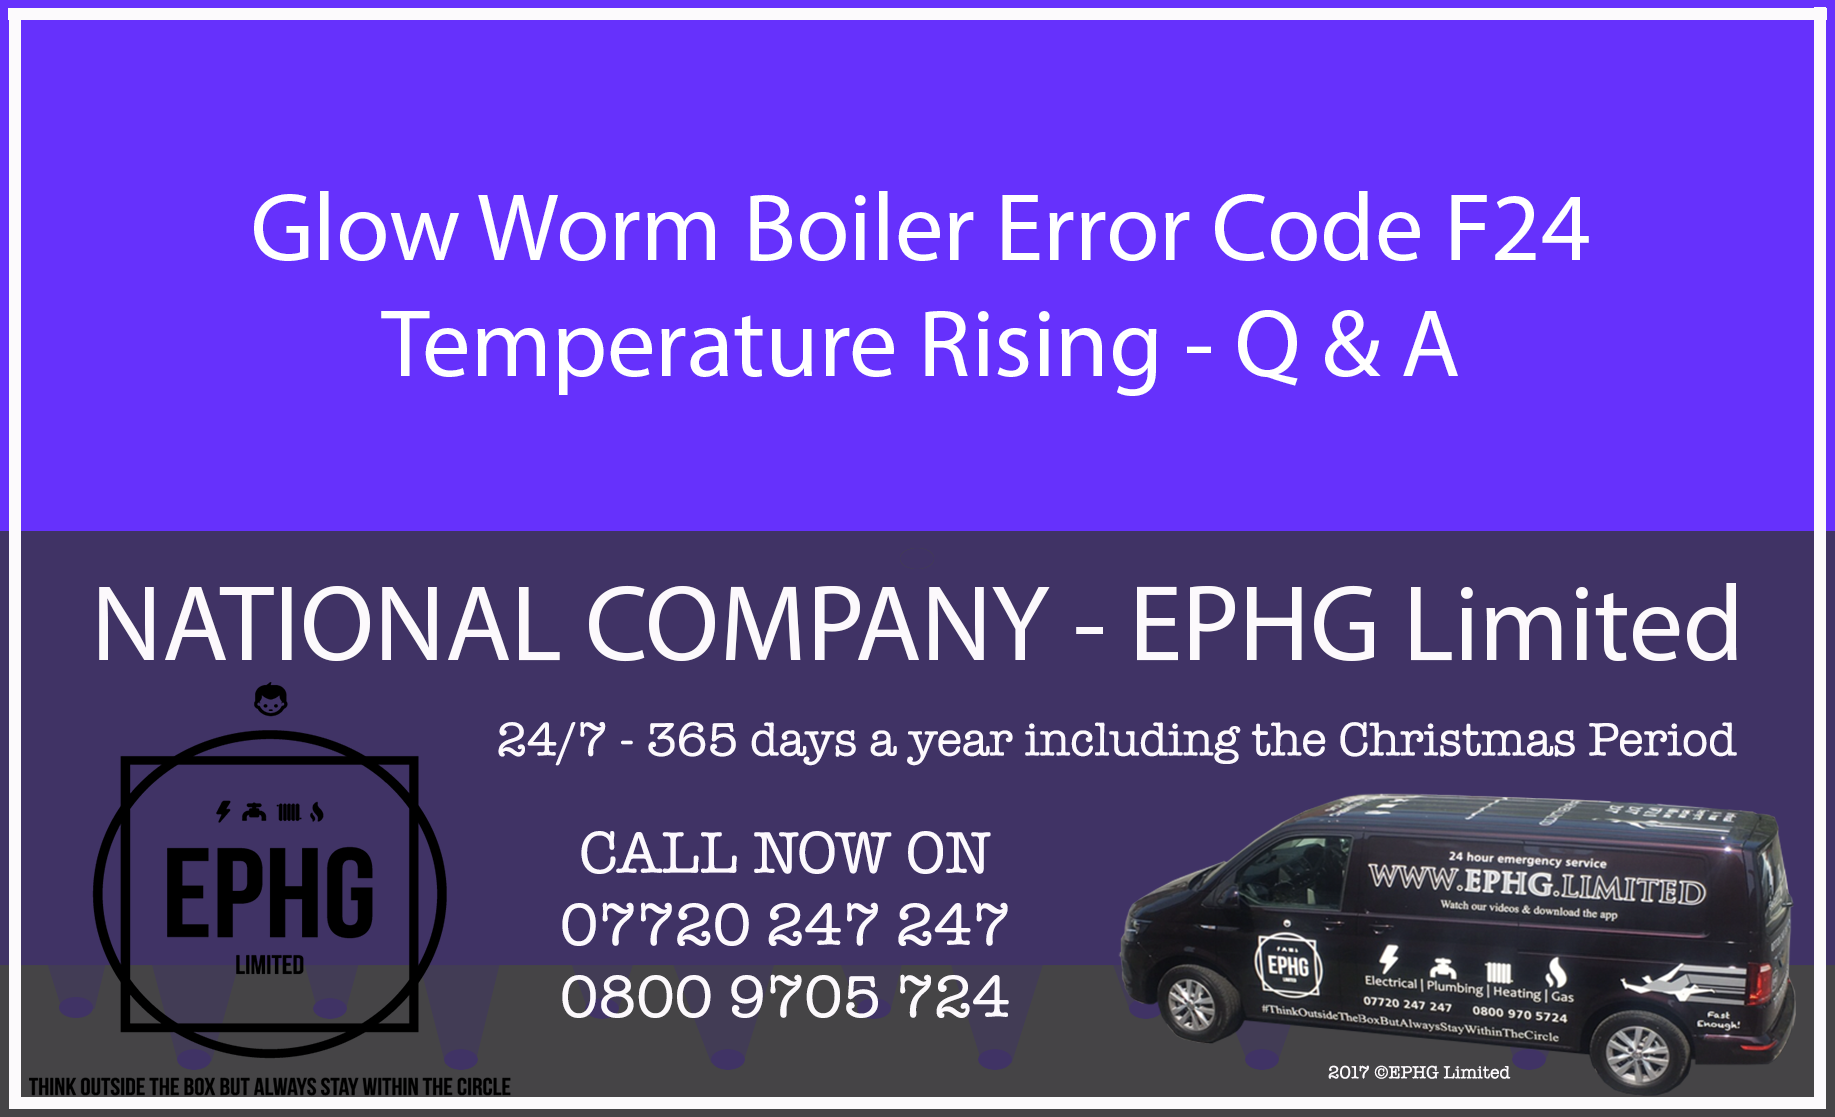 Glow-Worm boiler error code F.24